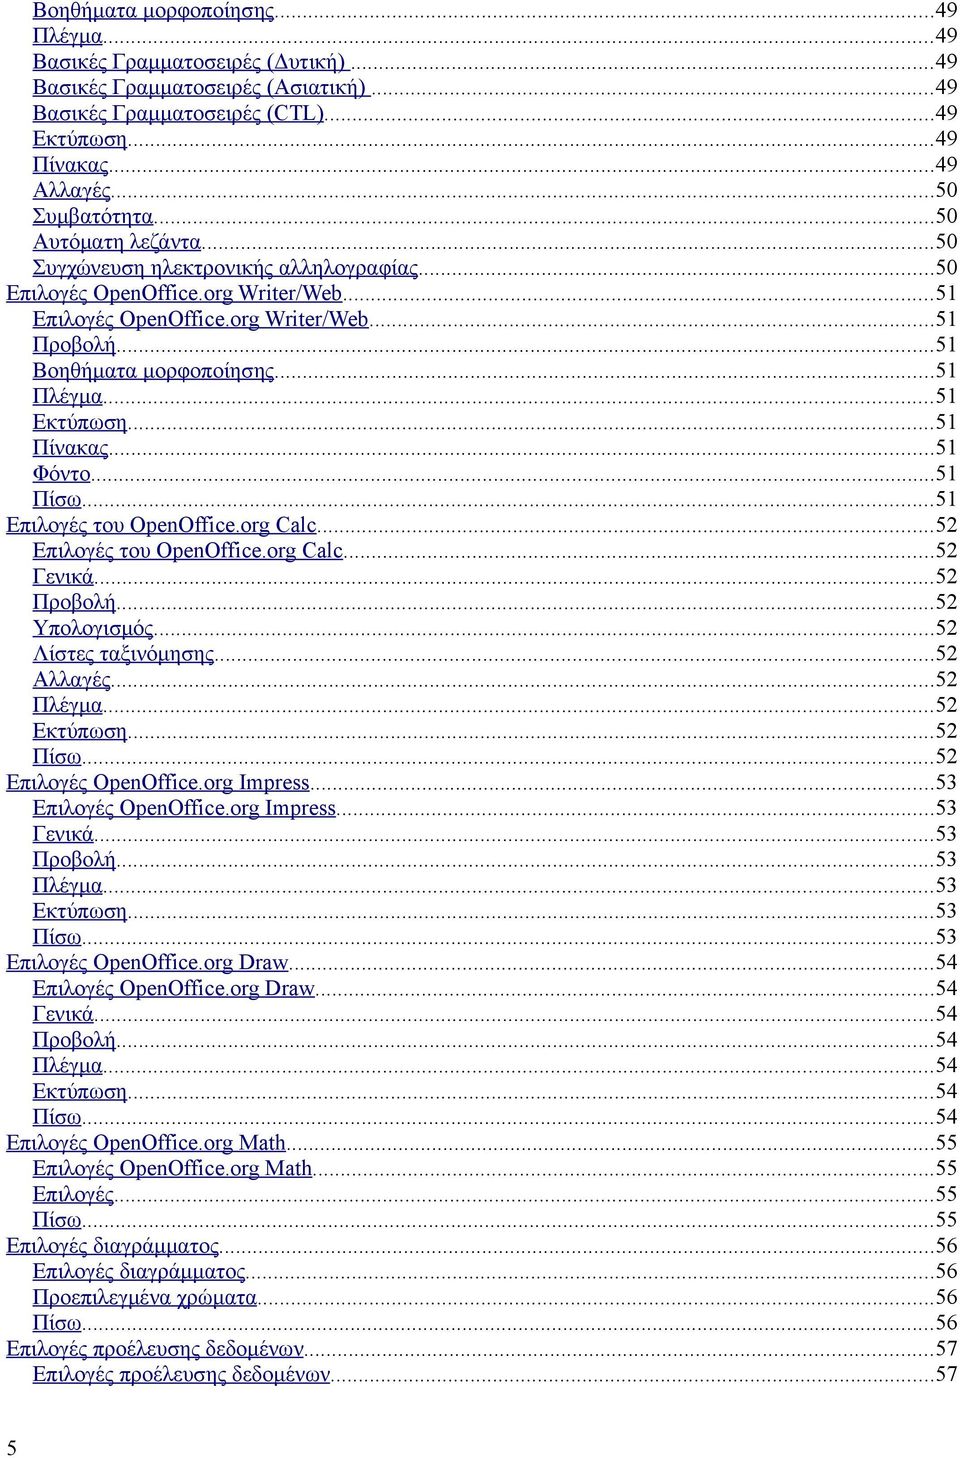 ..51 Εκτύπωση...51 Πίνακας...51 Φόντο...51 Πίσω...51 Επιλογές του OpenOffice.org Calc...52 Επιλογές του OpenOffice.org Calc...52 Γενικά...52 Προβολή...52 Υπολογισμός...52 Λίστες ταξινόμησης.